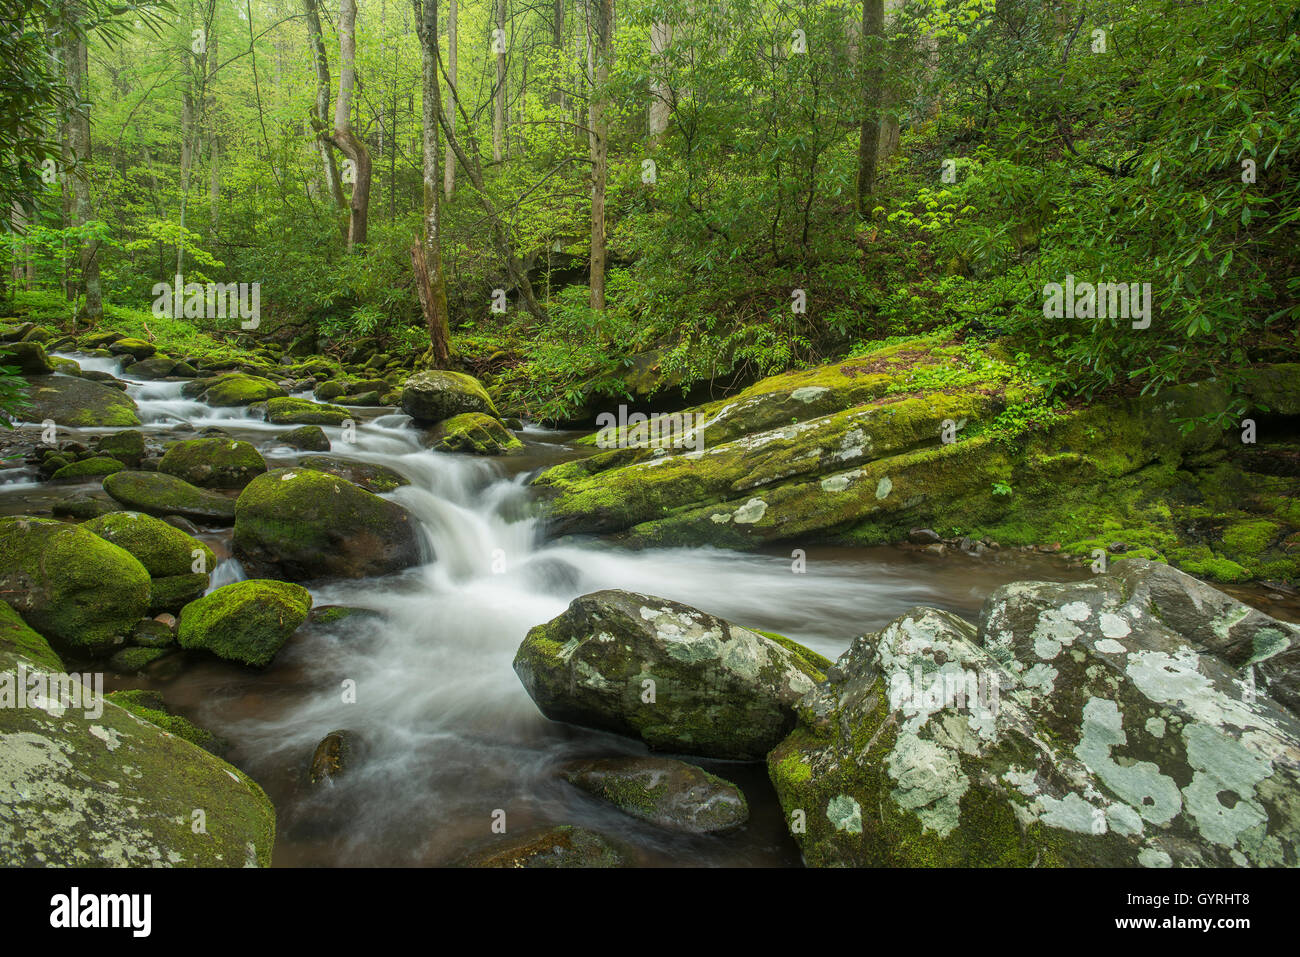 Cubiertos de musgo de rocas y piedras a lo largo del río Roaring Fork, Verano, Great Smoky Mountain National Park, Tennessee, EE.UU. Foto de stock